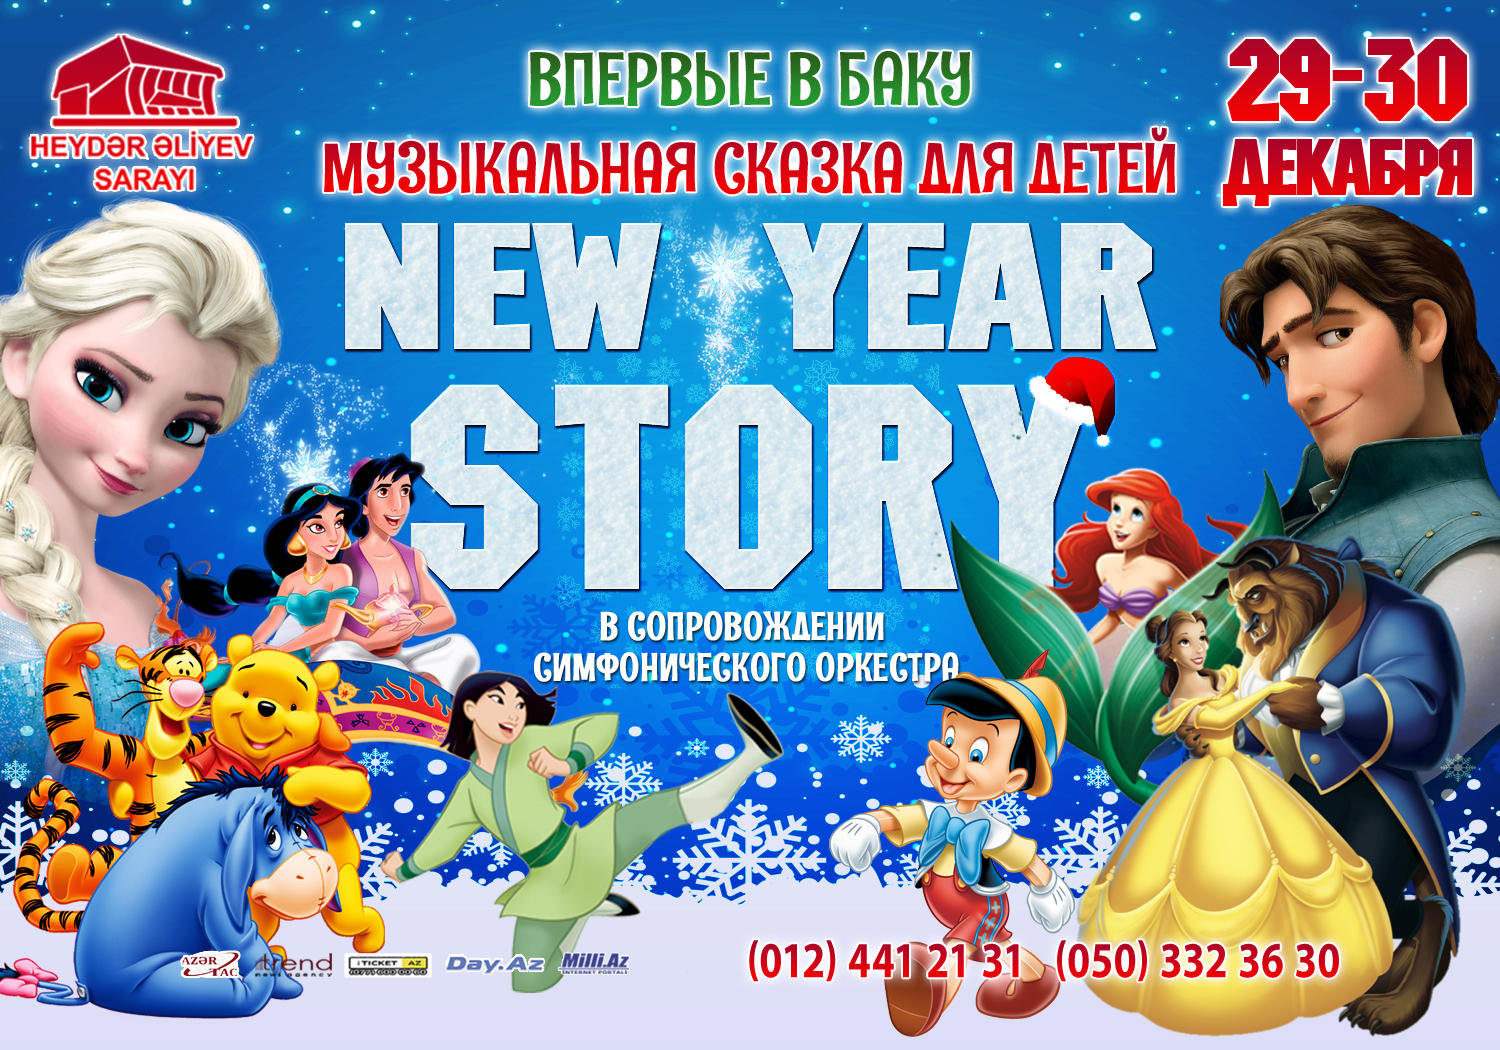 Впервые в Баку музыкальная сказка для детей в сопровождении симфонического оркестра